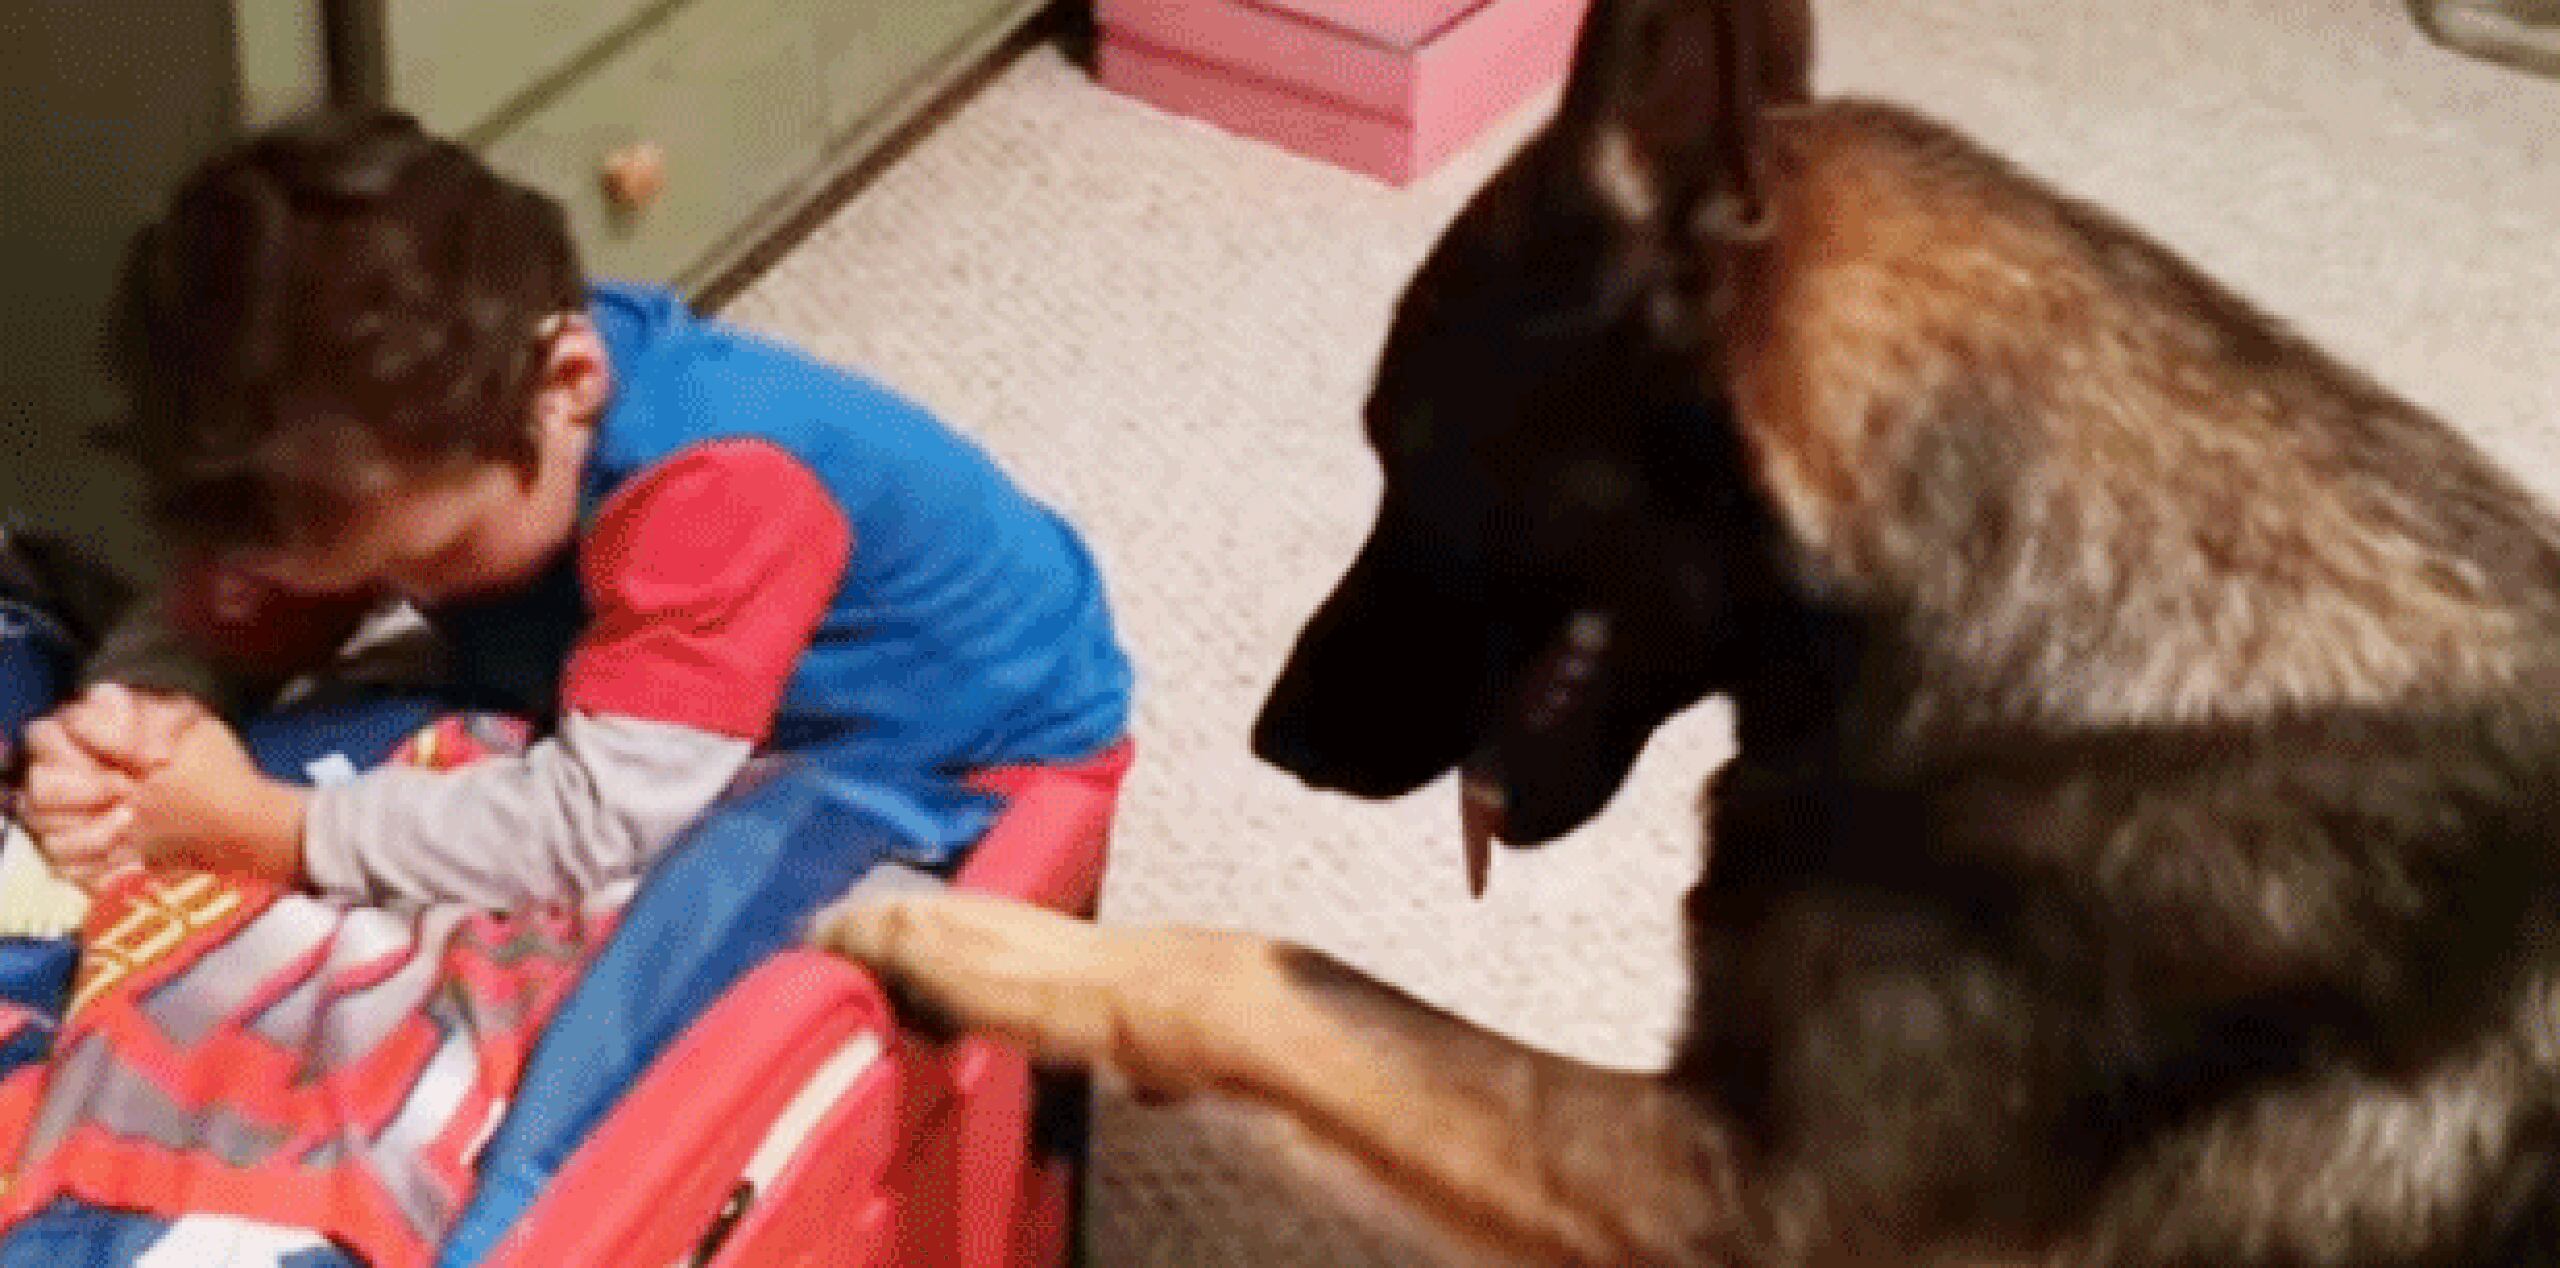 El inteligente can  ayuda al niño a recoger los juguetes que estaban en el suelo, colocándolos en un cajón de plástico.  (YouTube) 
